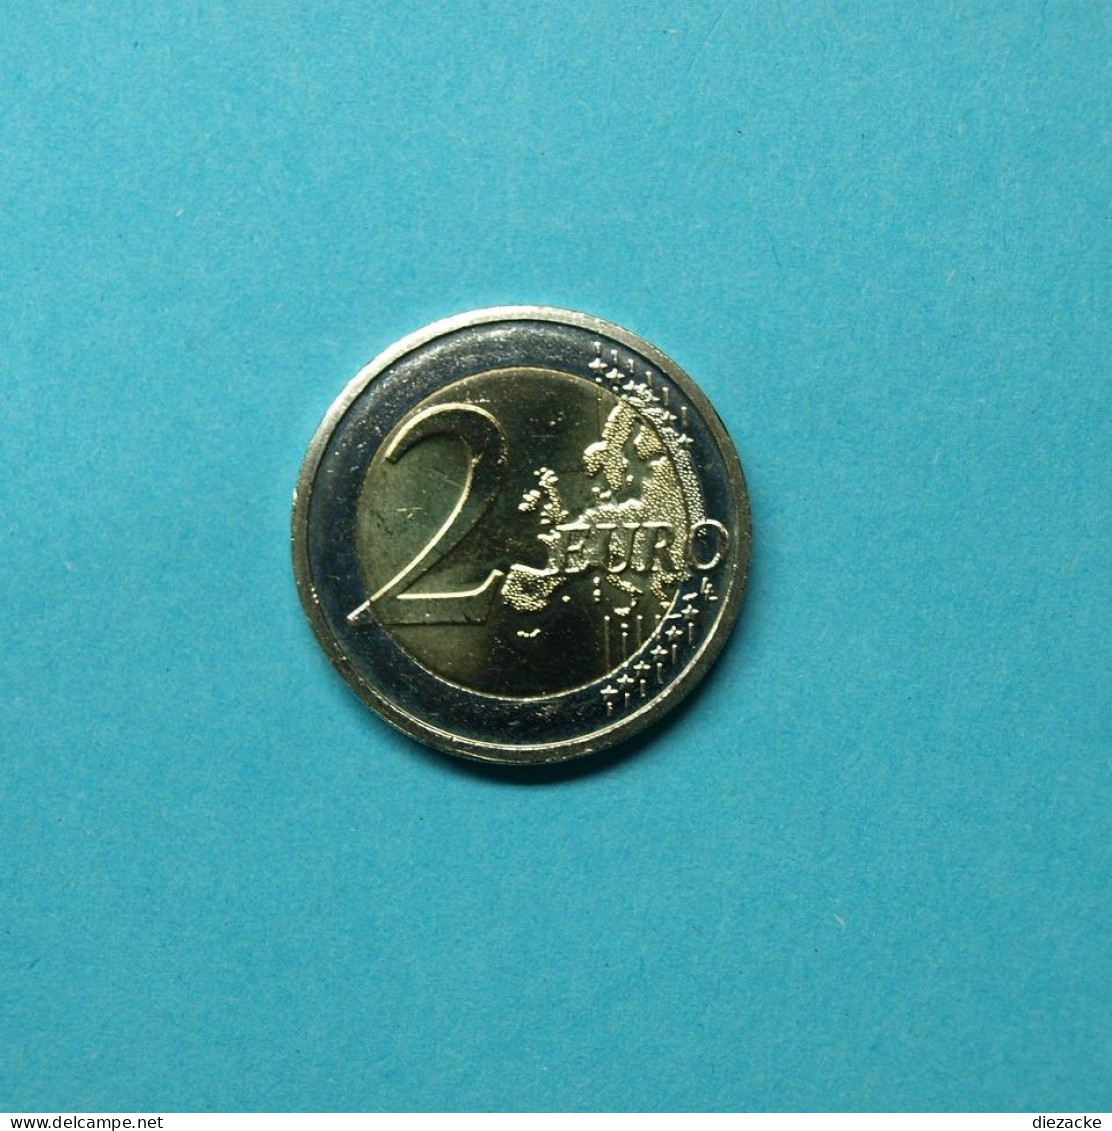 Irland 2012 2 Euro 10 Jahre Euro Bargeld Unzirkuliert (M4413 - Ierland